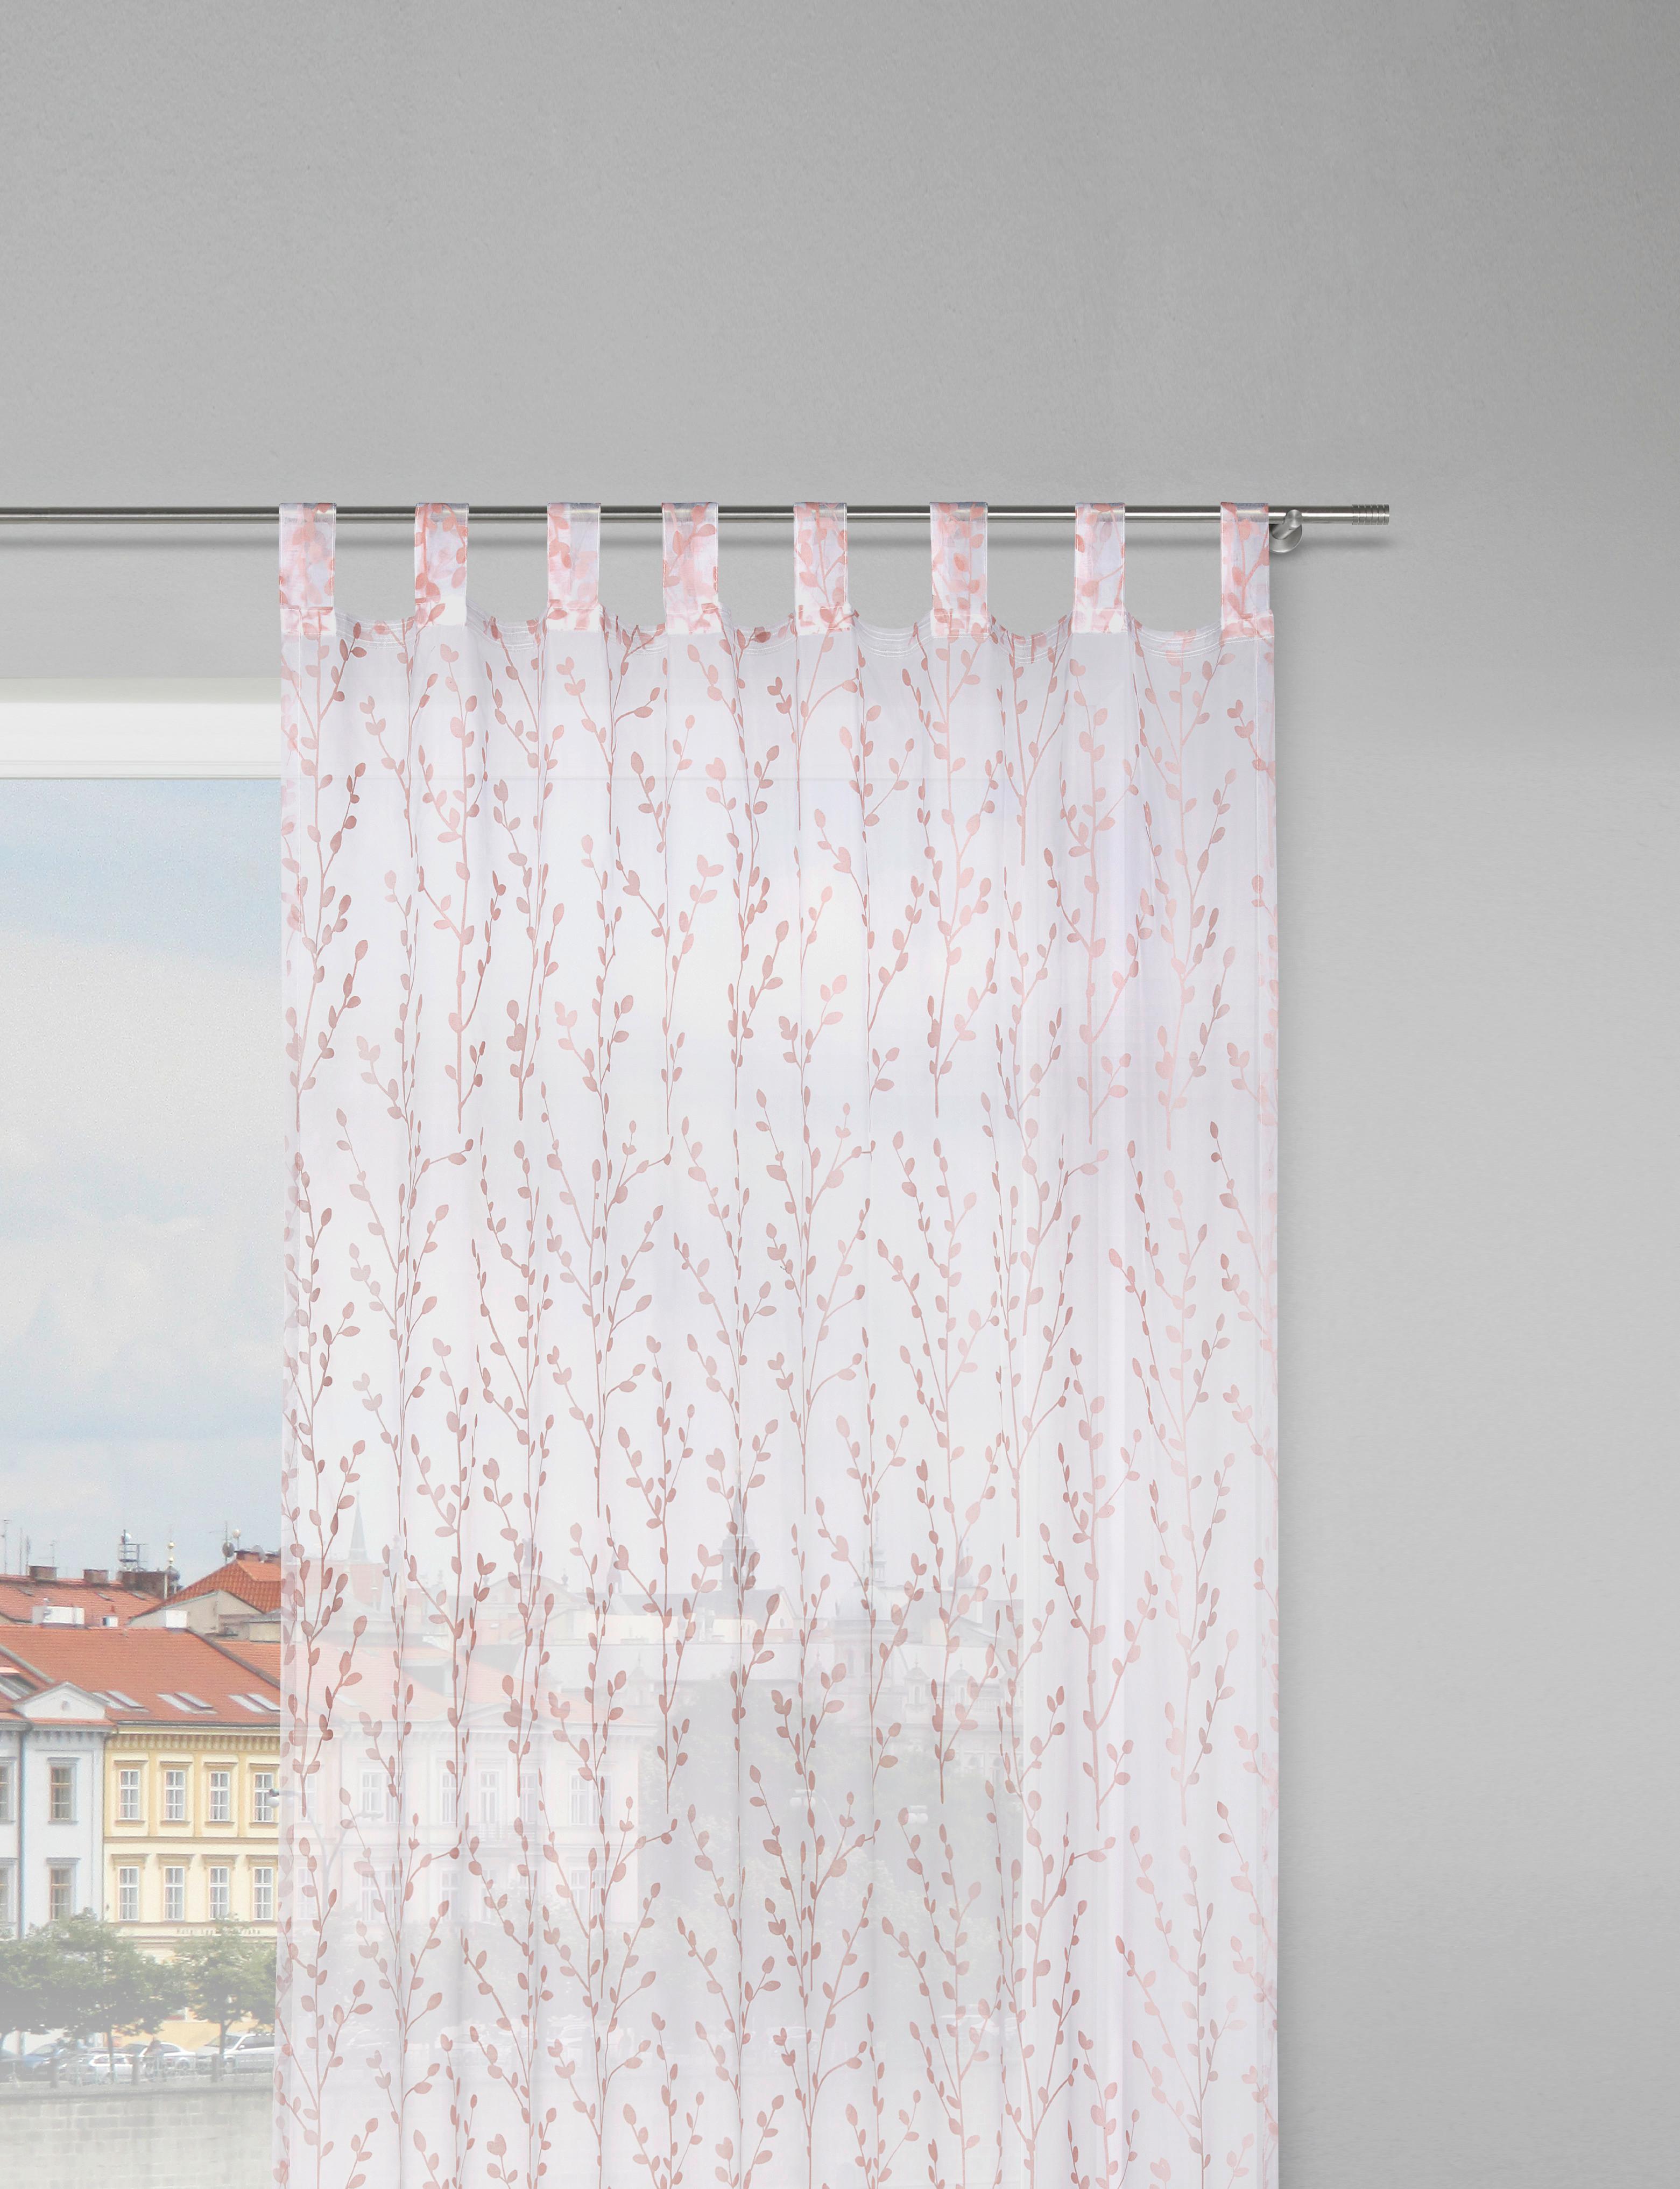 Závěs S Poutky Christiane, 140/250cm, Růžová - starorůžová, Konvenční, textil (140/250cm) - Modern Living